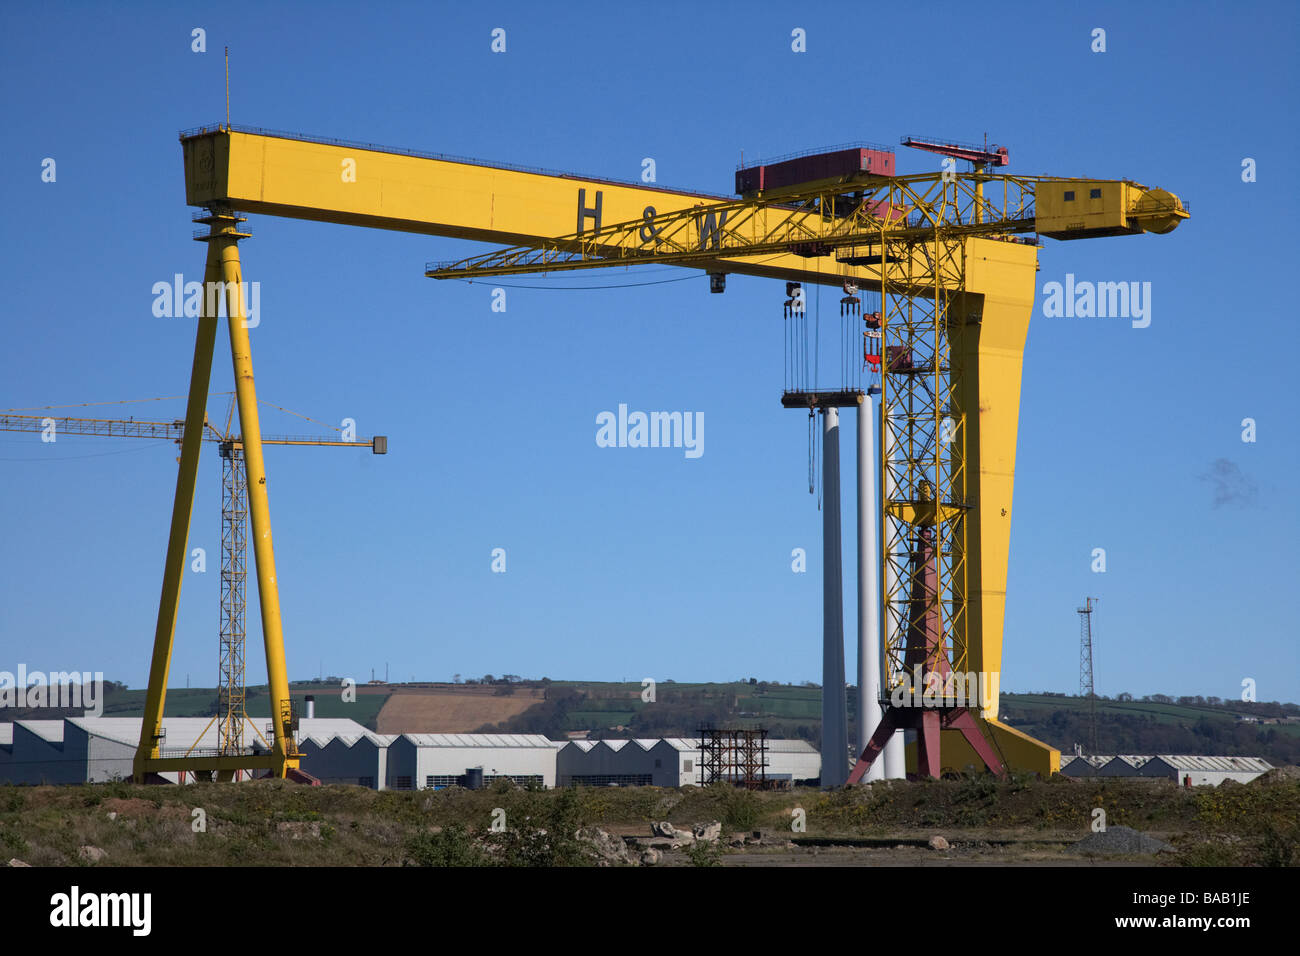 Grues Harland and Wolff au chantier trimestre titanic belfast irlande du nord de l'île de queens uk Banque D'Images